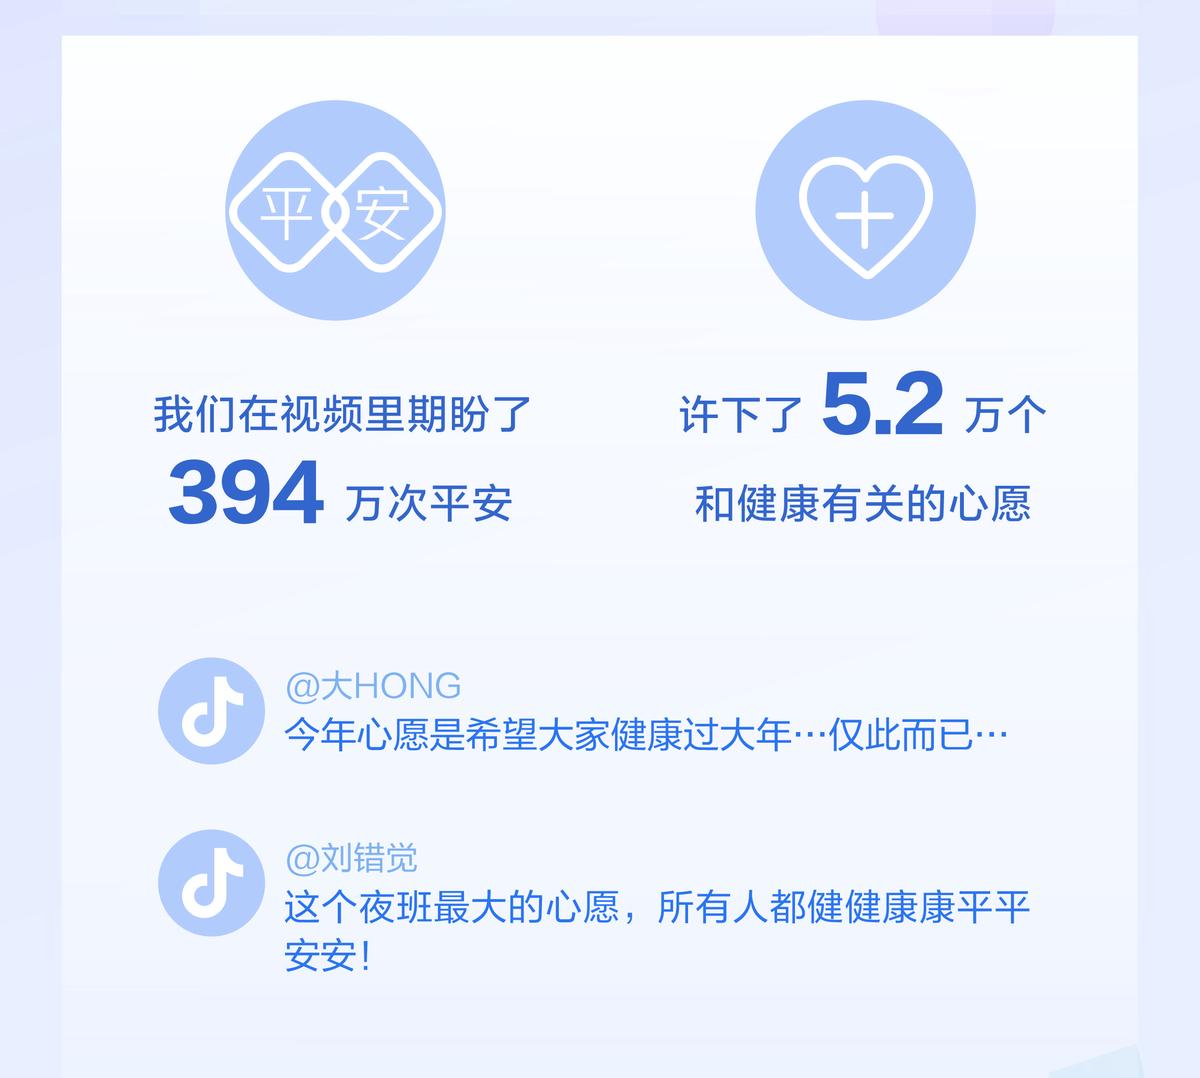 抖音发布《抖音2020年春节数据报告》:抖音用户共搜索了4373万次和武汉疫情有关的内容;394万个视频和平安相关 医务人员获赞8.6亿次